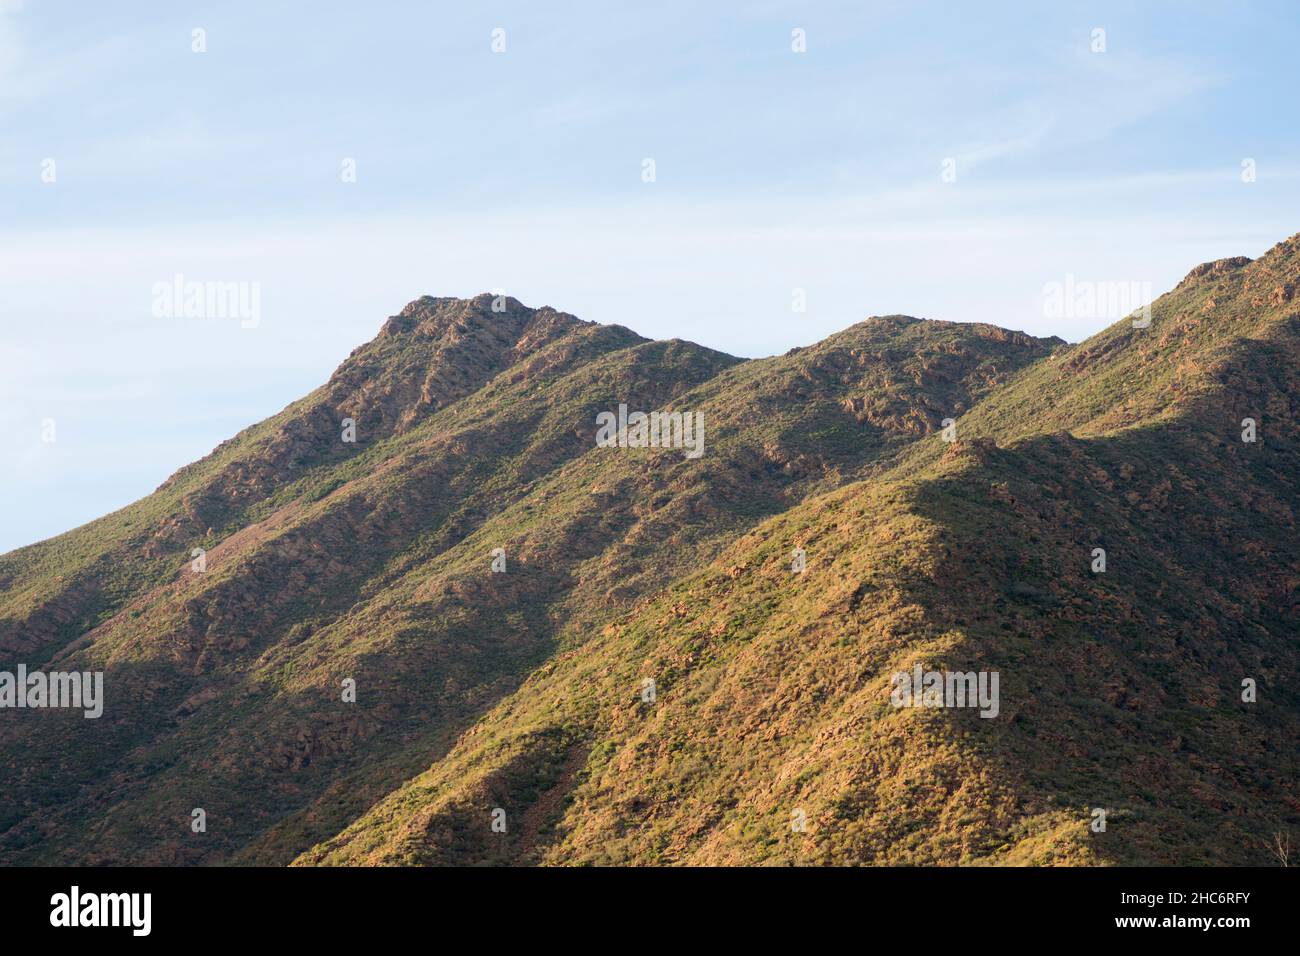 Montagnes andalouses avec végétation clairsemée, montagnes péridotite, Mijas, Andalousie, Espagne. Banque D'Images